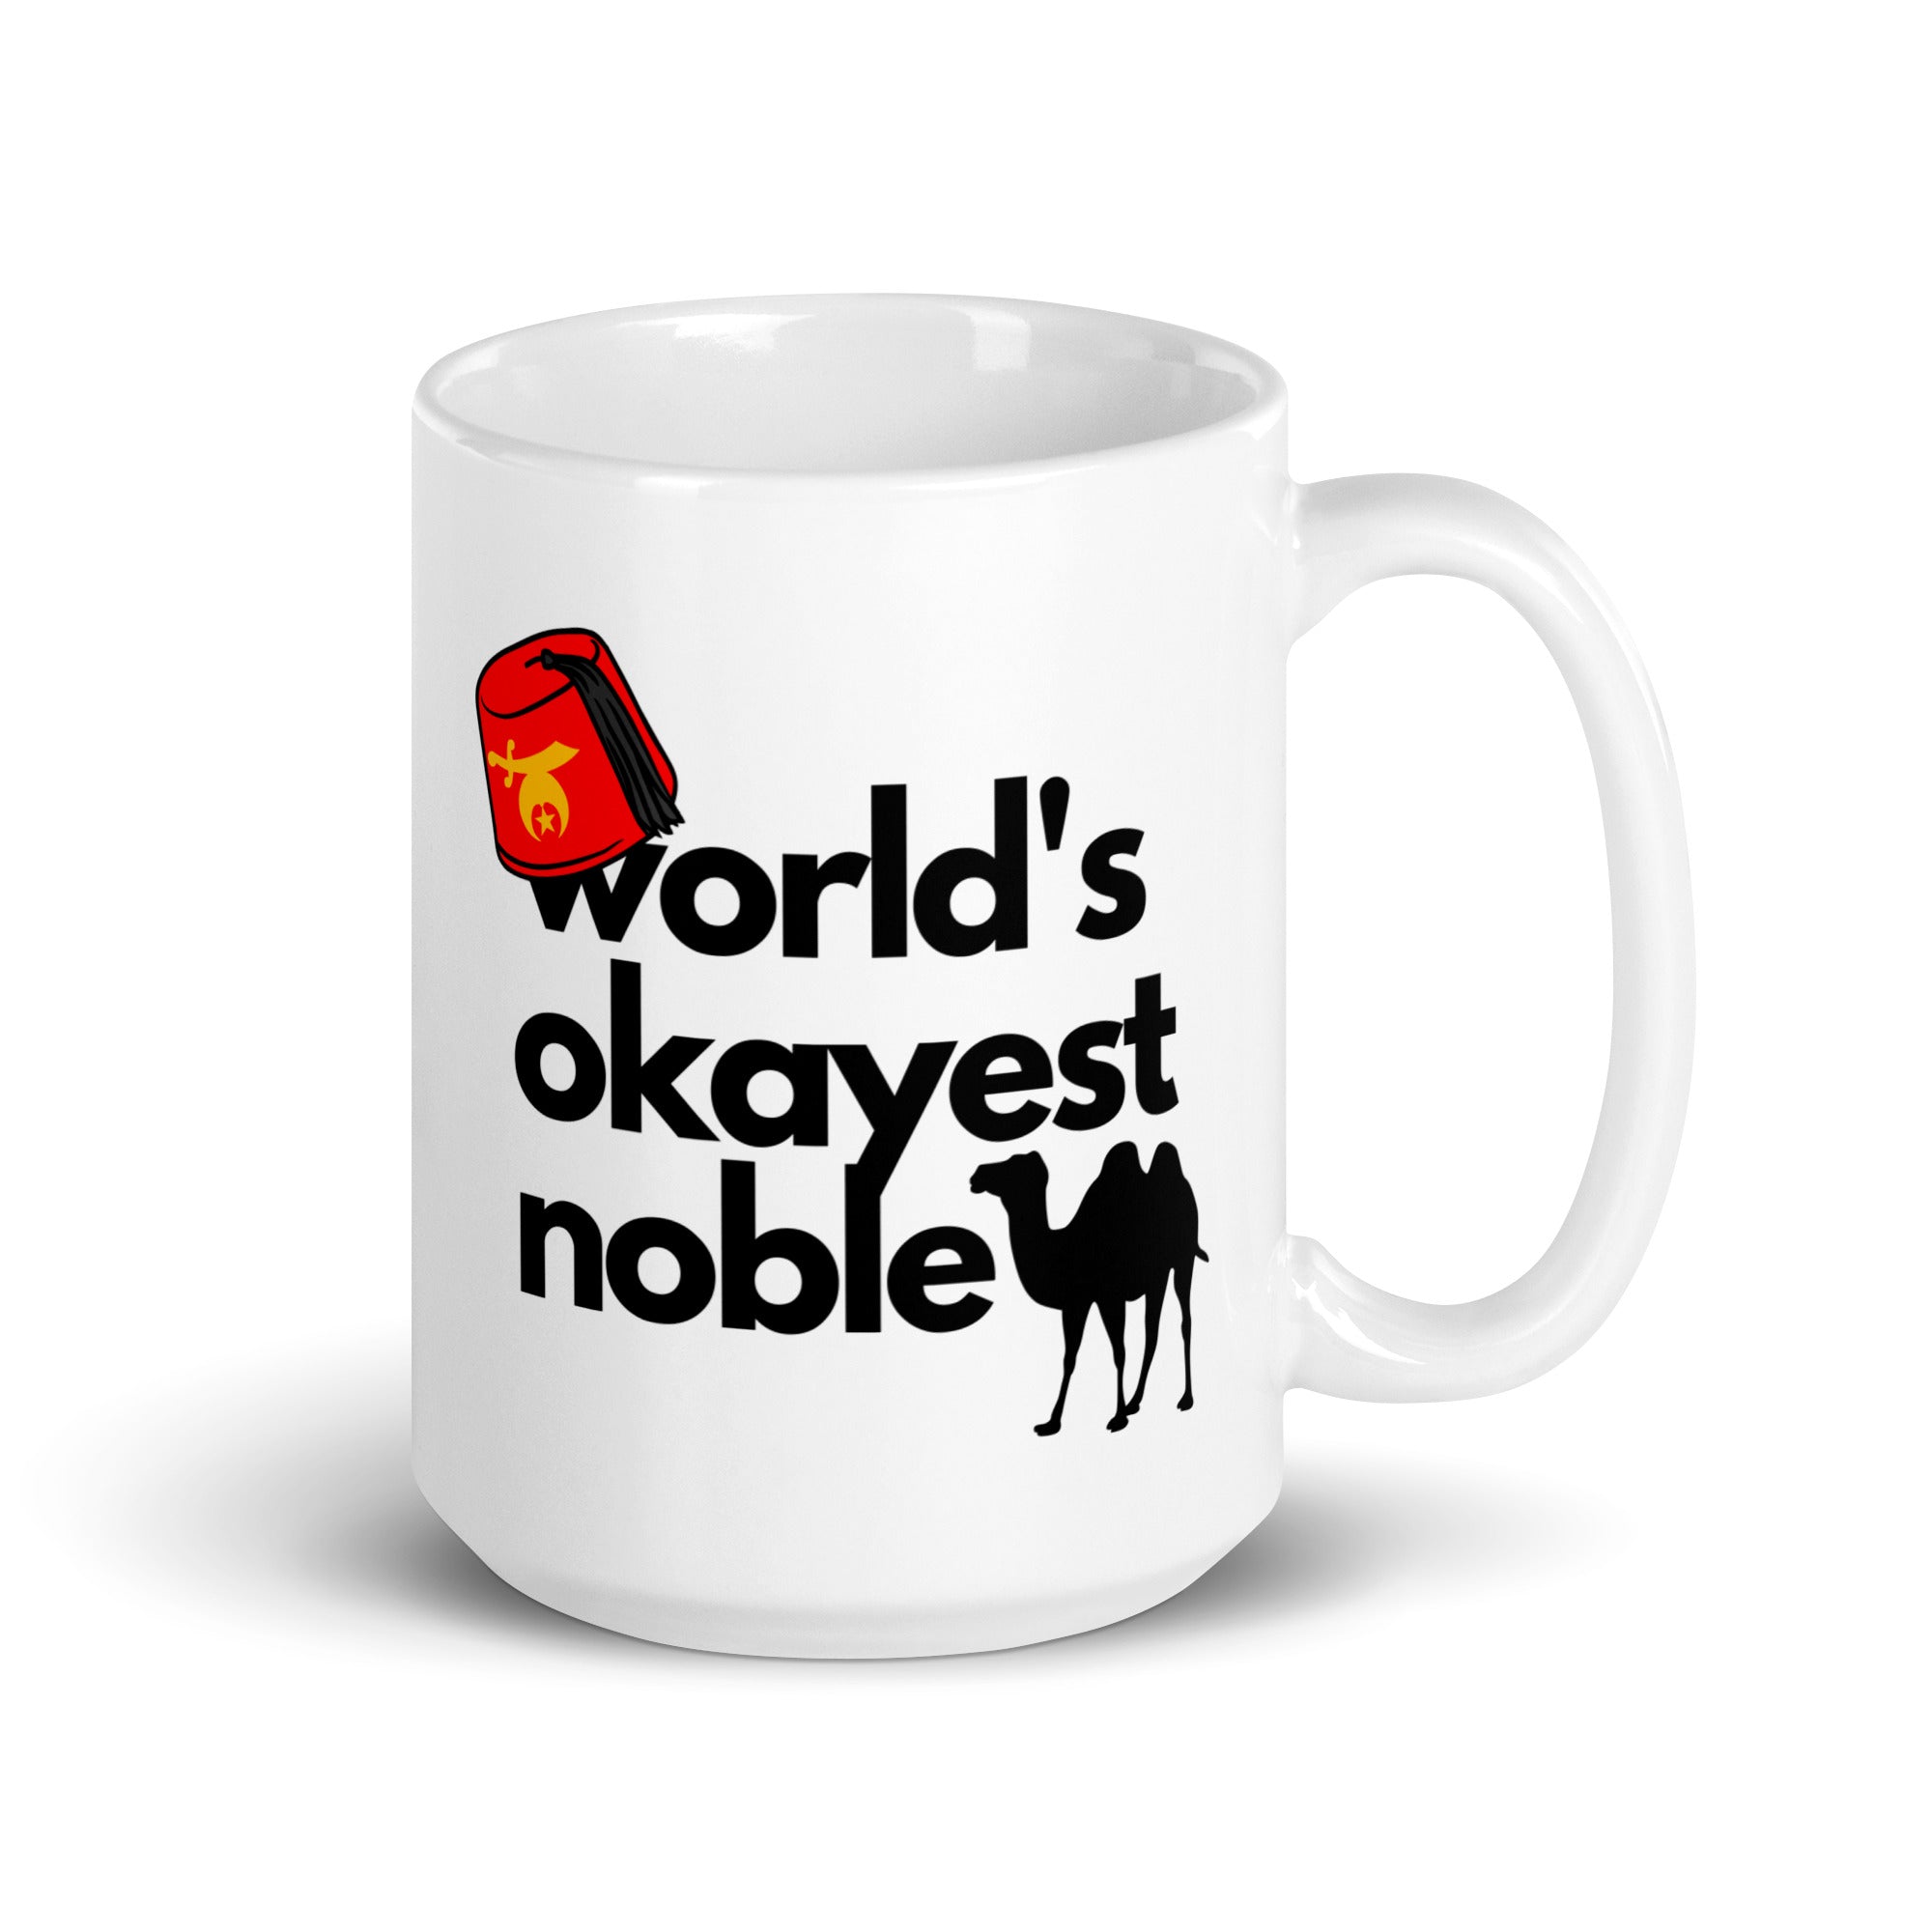 World's Okayest Noble Shriners mug